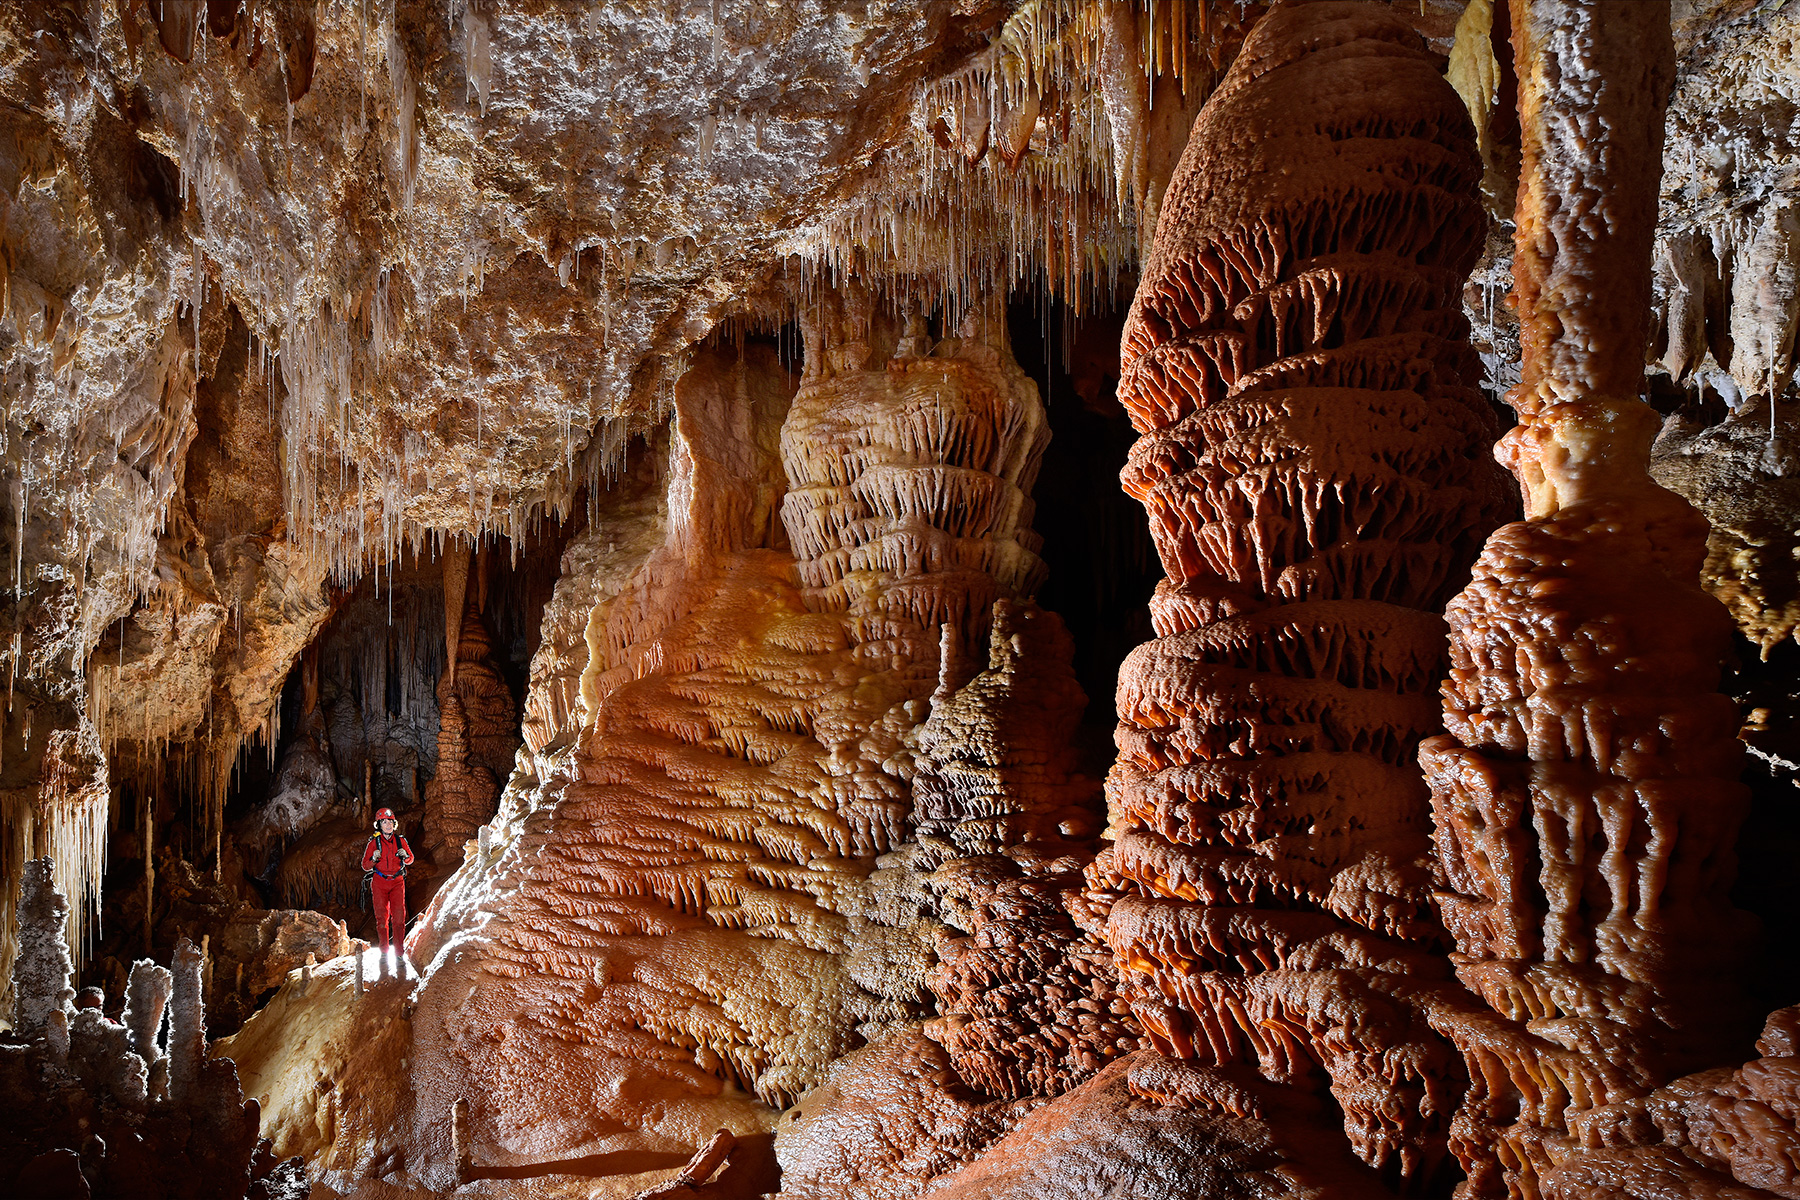 Grotte de Clamouse - Galerie concrétionnée avec coulées colorées et grandes colonnes rouges (spéléo en arrière plan)